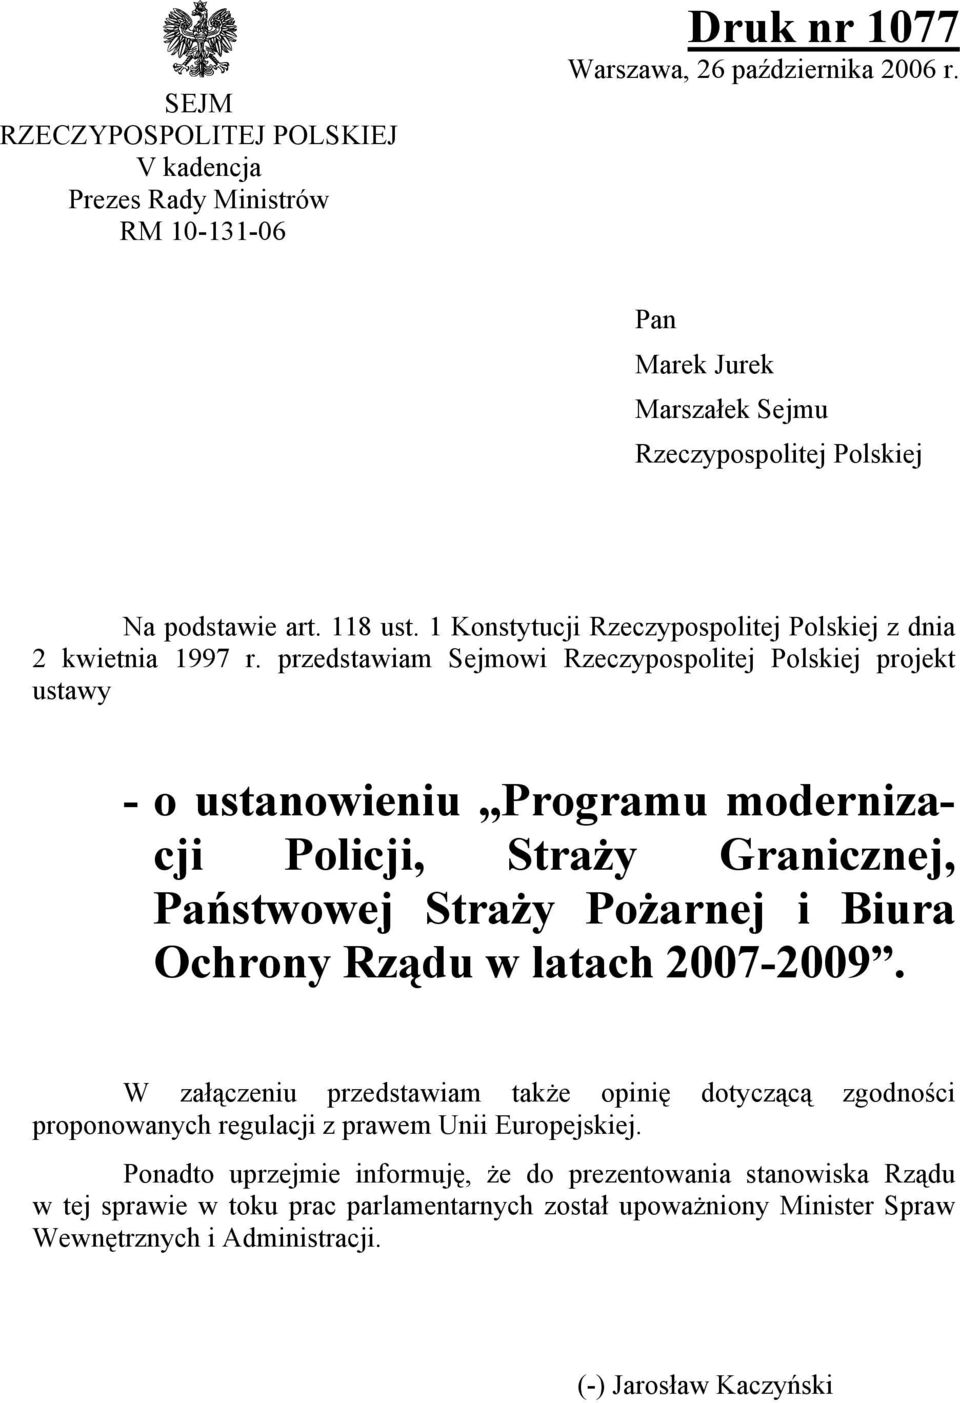 przedstawiam Sejmowi Rzeczypospolitej Polskiej projekt ustawy - o ustanowieniu Programu modernizacji Policji, Straży Granicznej, Państwowej Straży Pożarnej i Biura Ochrony Rządu w latach